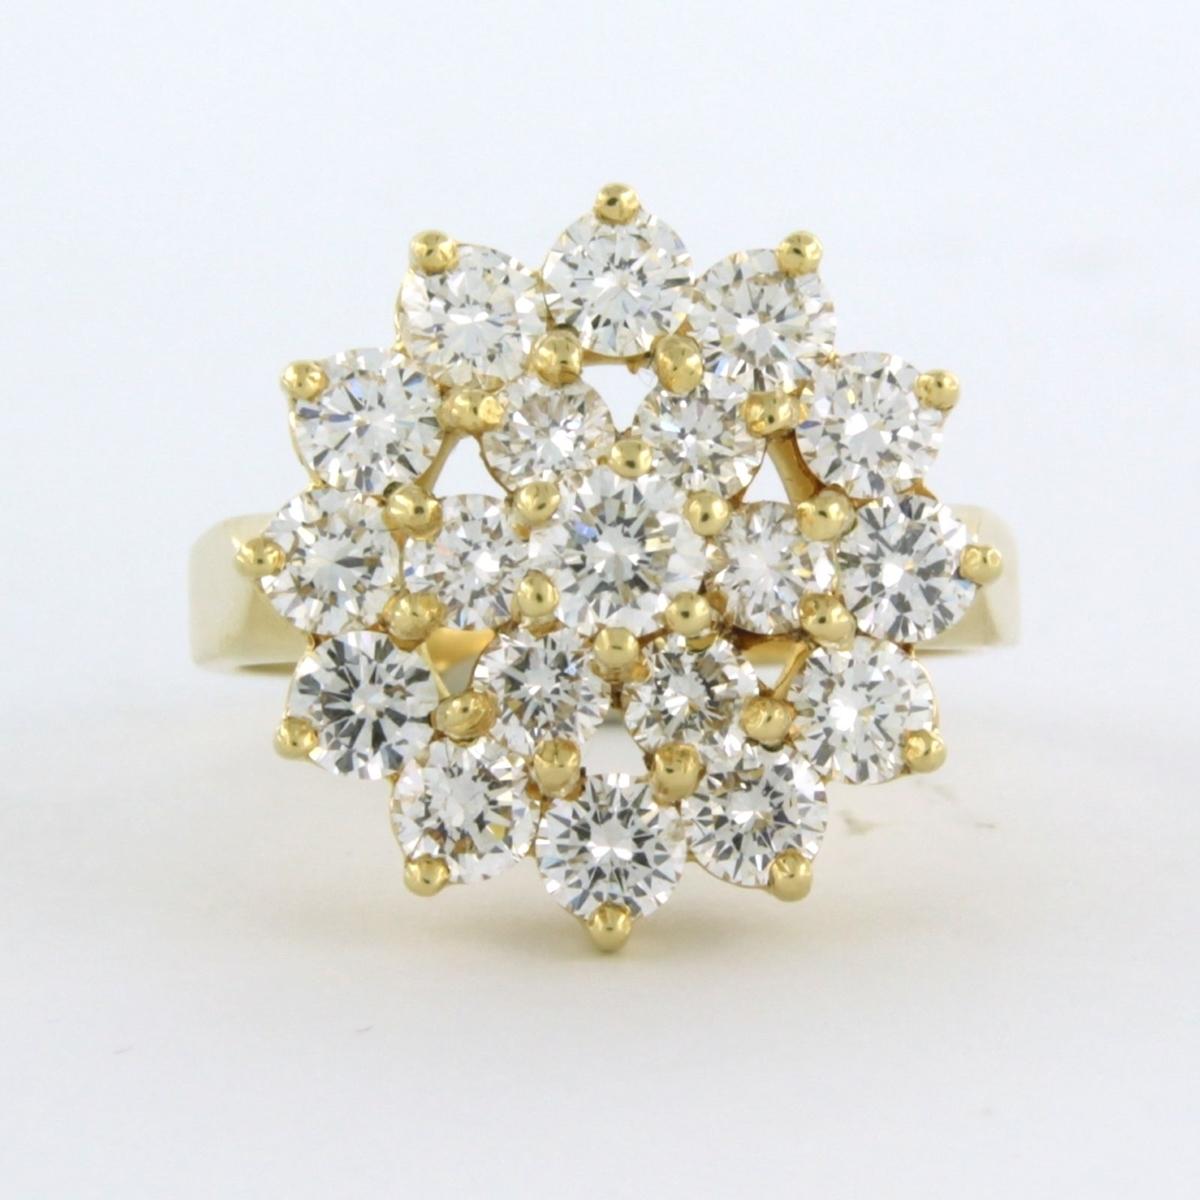 Ring aus 18 Karat Gelbgold, besetzt mit Diamanten im Brillantschliff. 2.30 ct - G/H - VS/SI - Ringgröße U.S. 7.5 - EU. 17.75 (56)

ausführliche Beschreibung

Der Ring ist 1,7 cm breit

Ringgröße US 7.5 - EU. 17.75 (56), der Ring kann kostenlos in